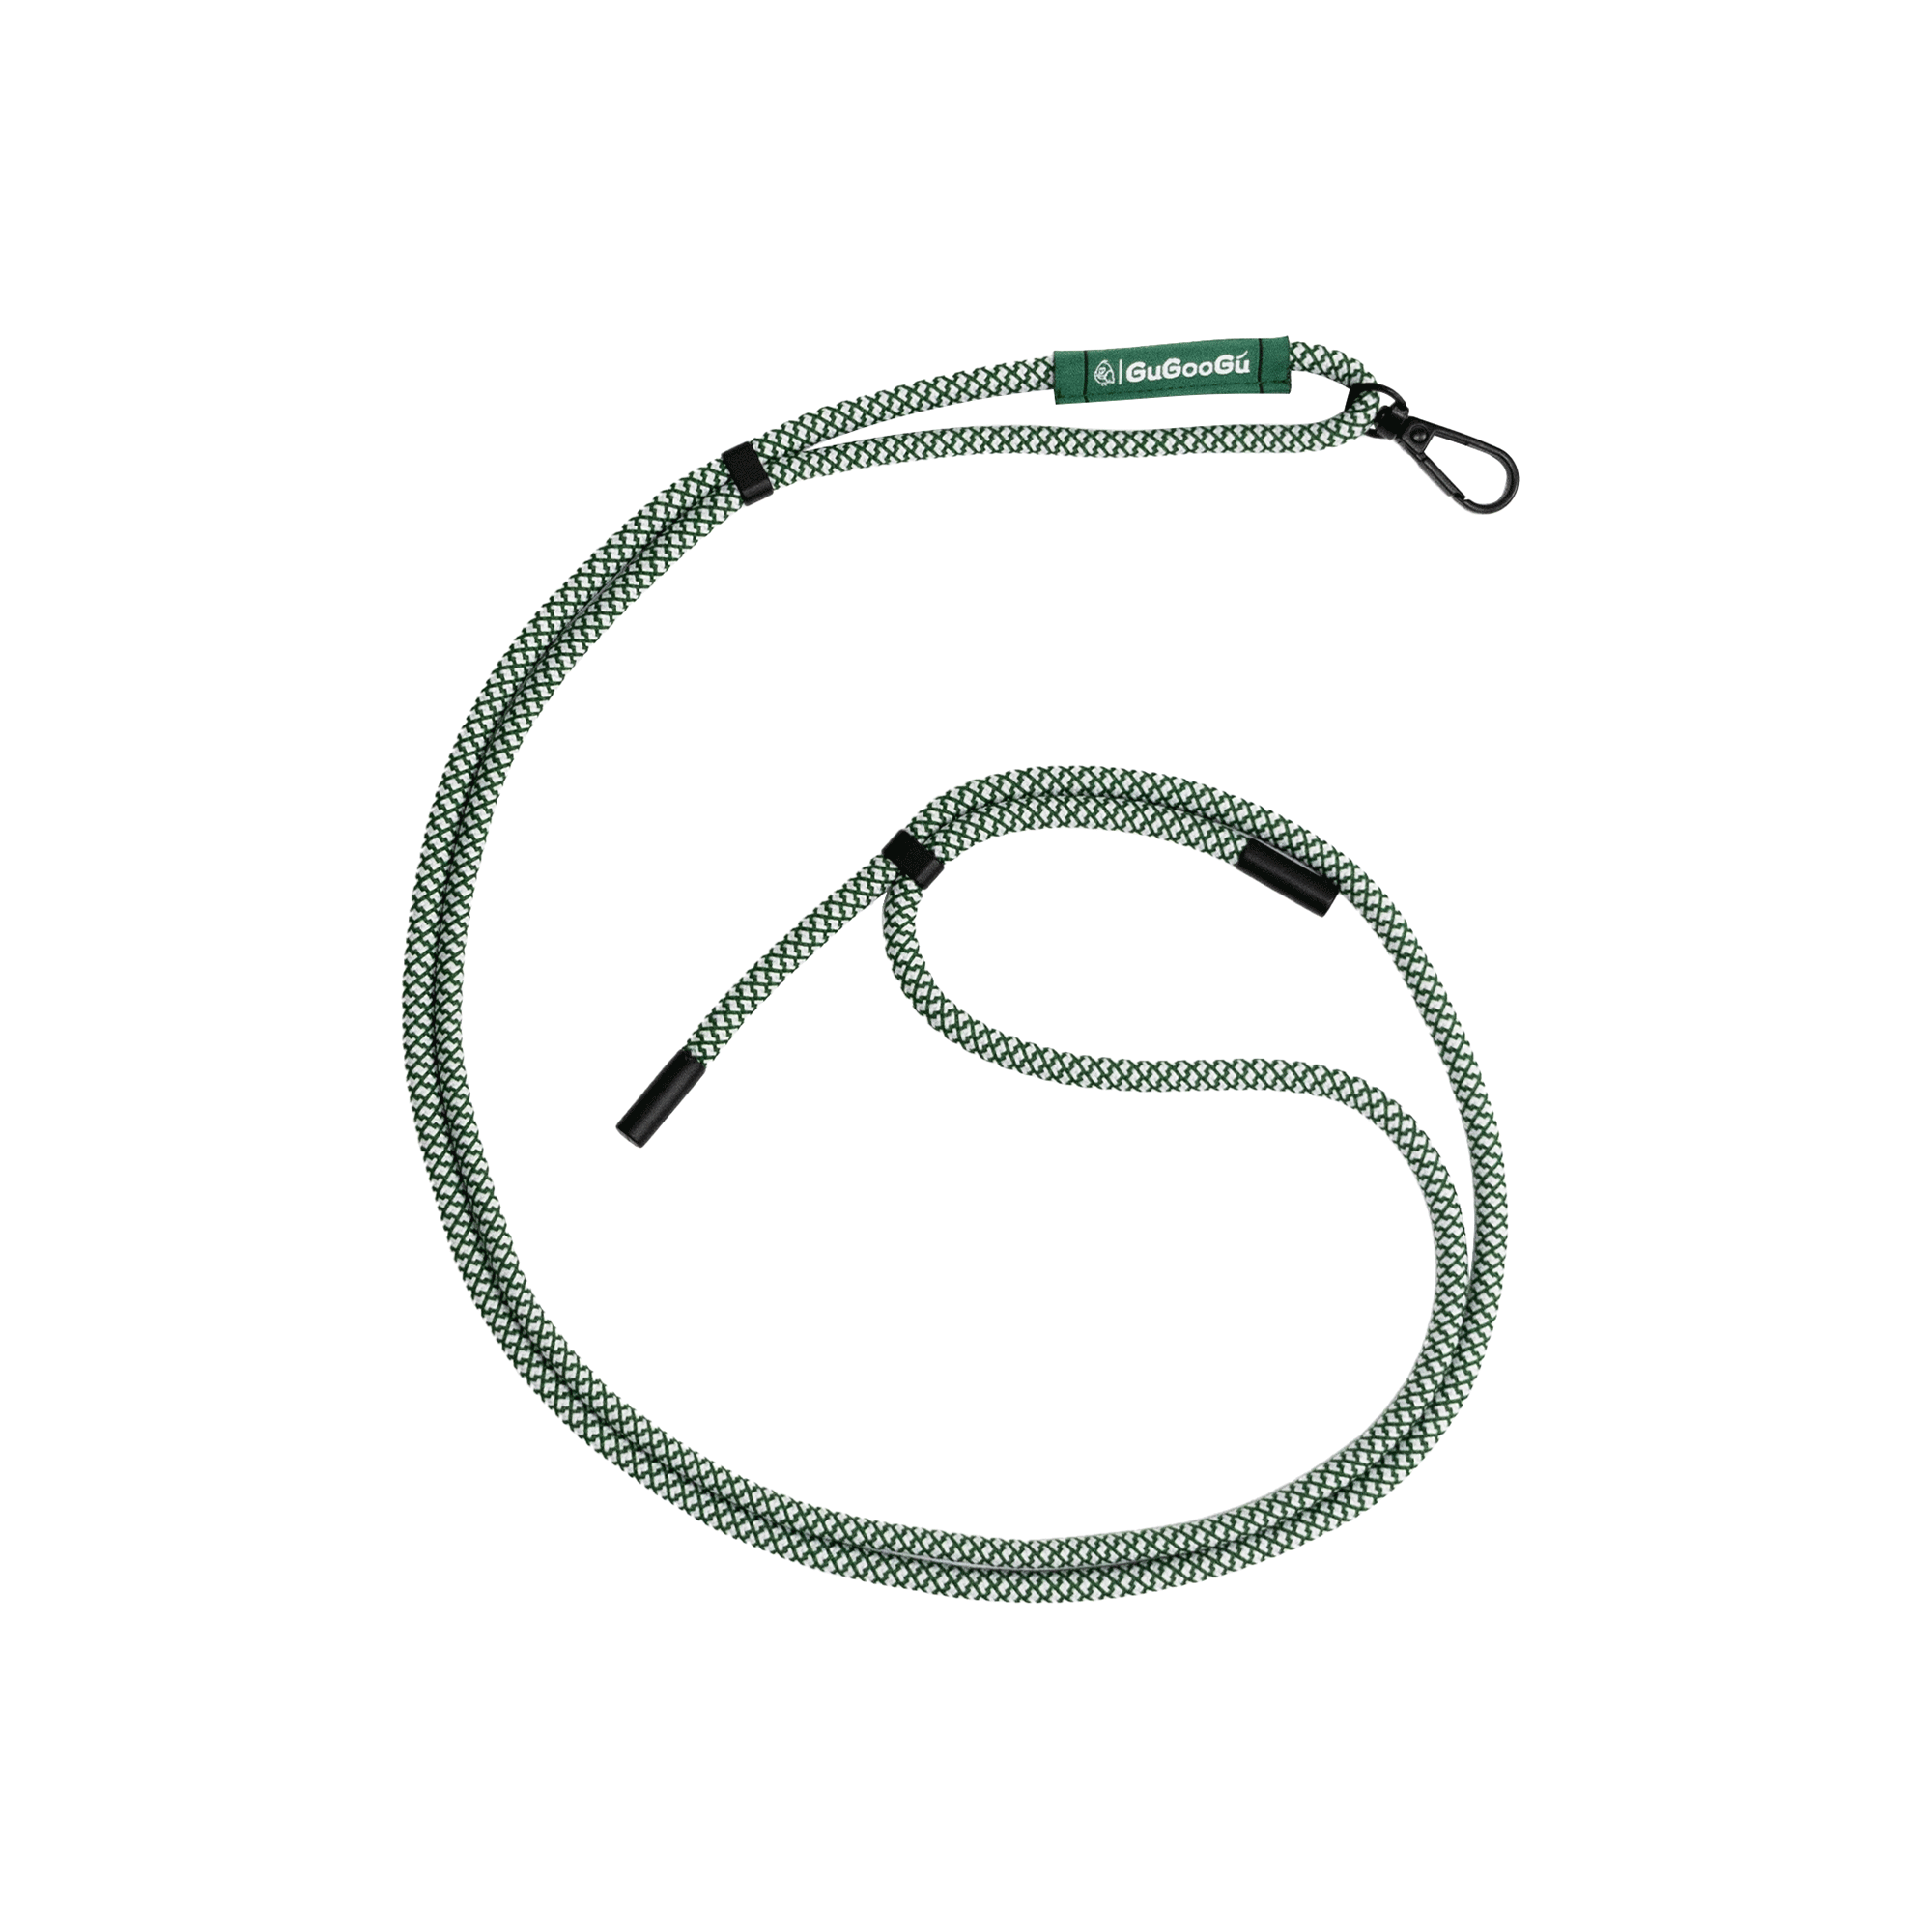 這是GUGOOGU的綠白拼色手機掛繩，它是一款不需要換手機殼就可以將手機掛在身上的手機繩。